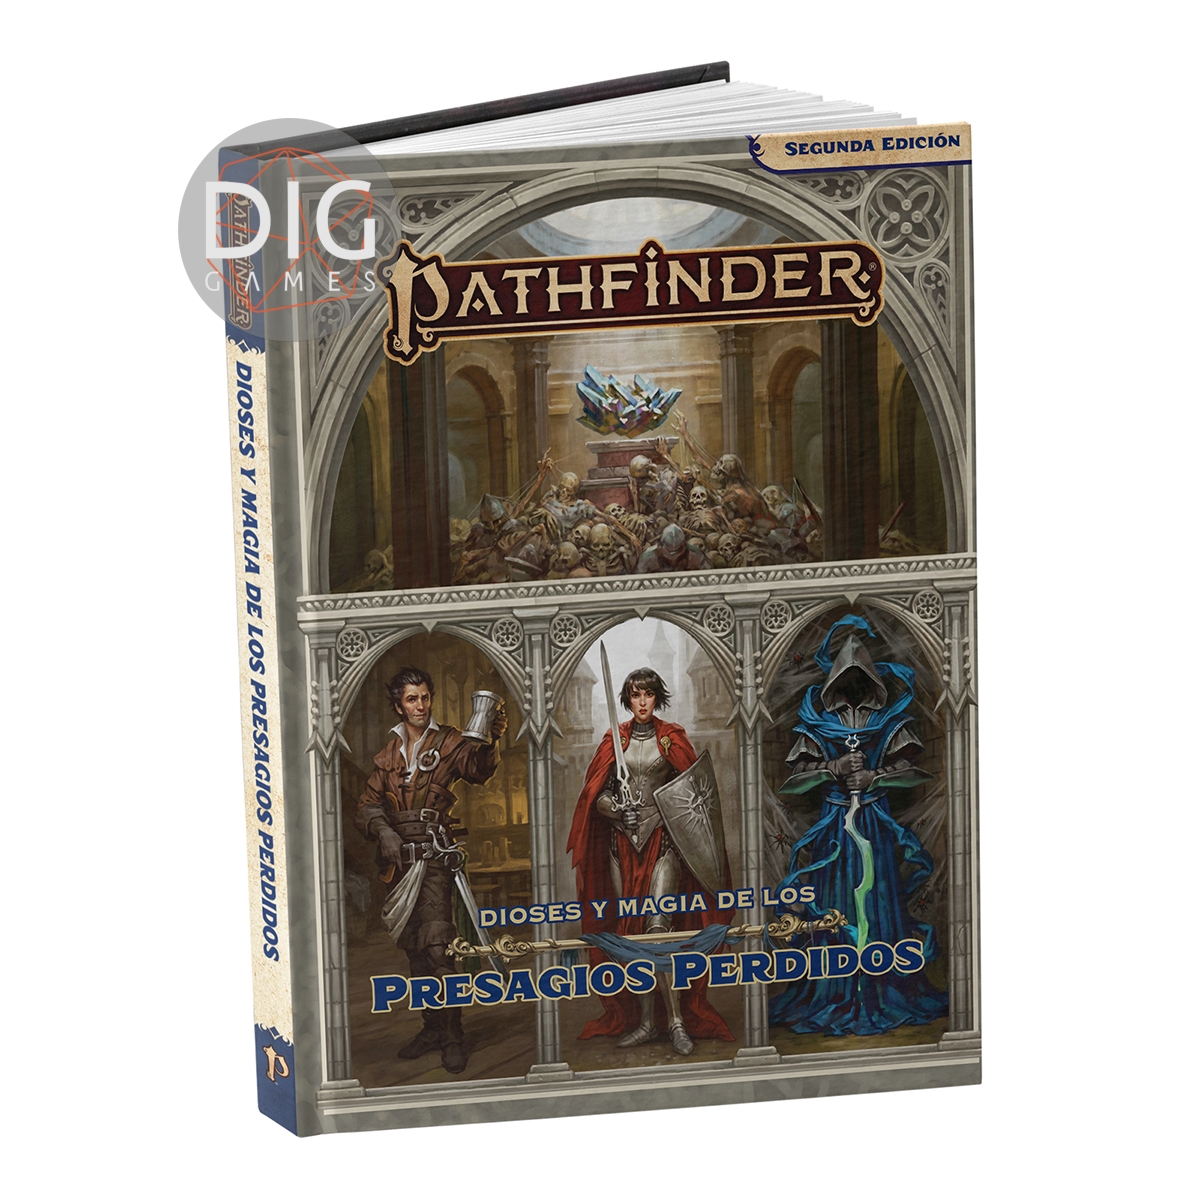 Pathfinder 2da Ed. Dioses y Magia de los Presagios Perdidos